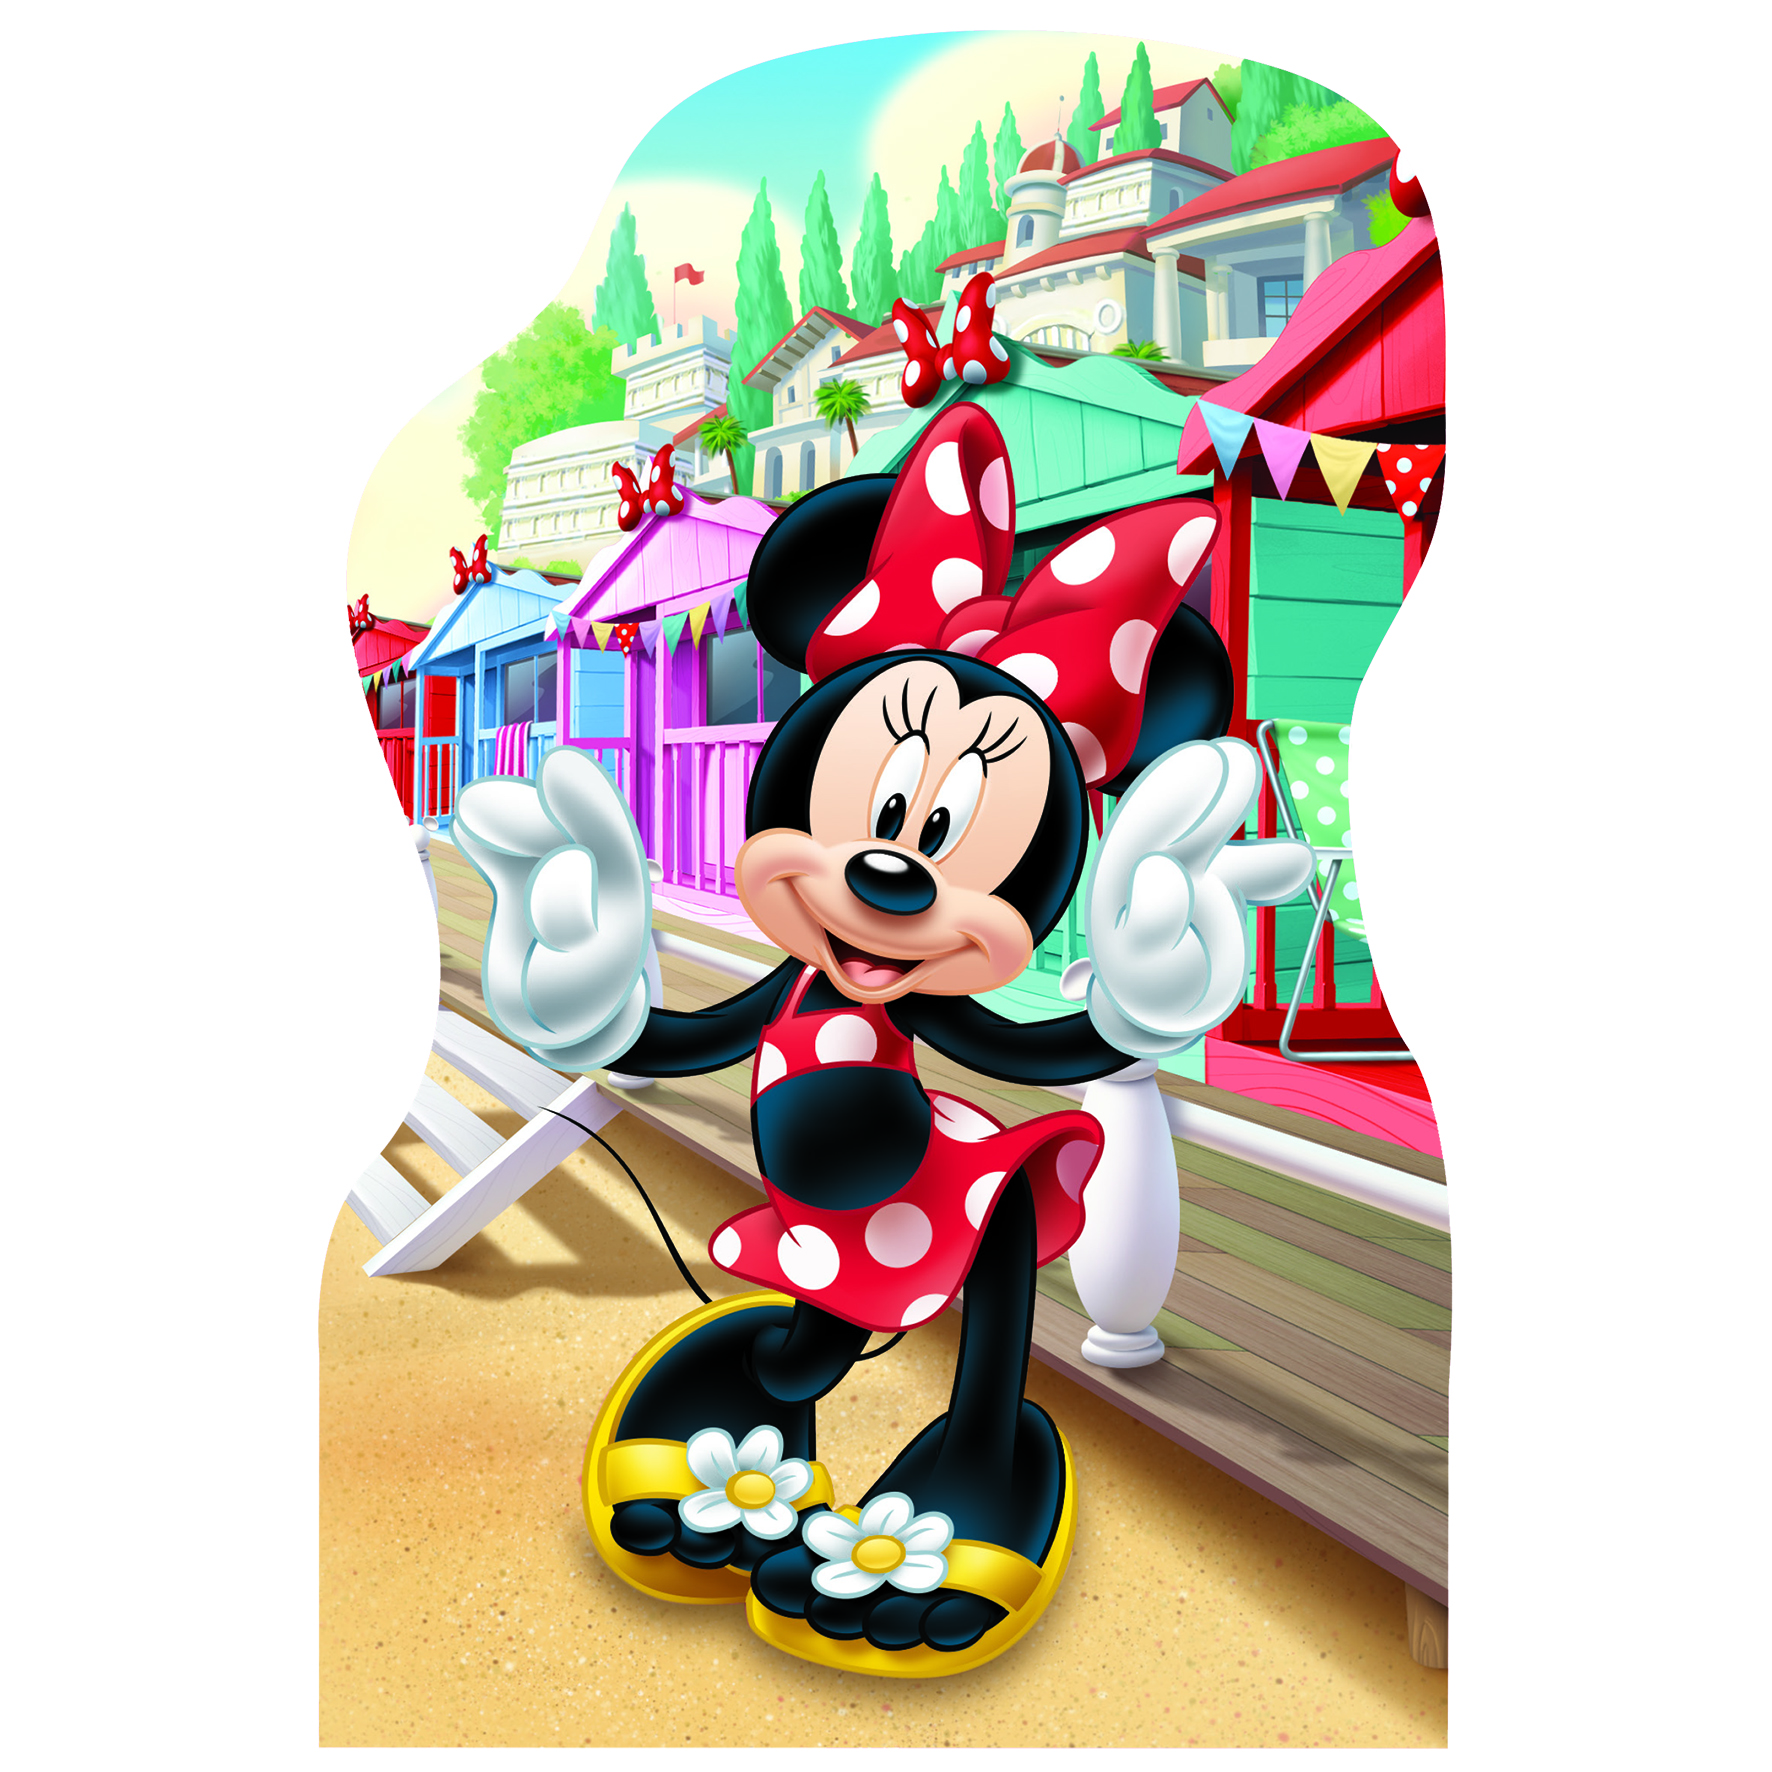 4 Puzzles - Minnie et Daisy - 54 Teile - DINO Puzzle acheter en ligne